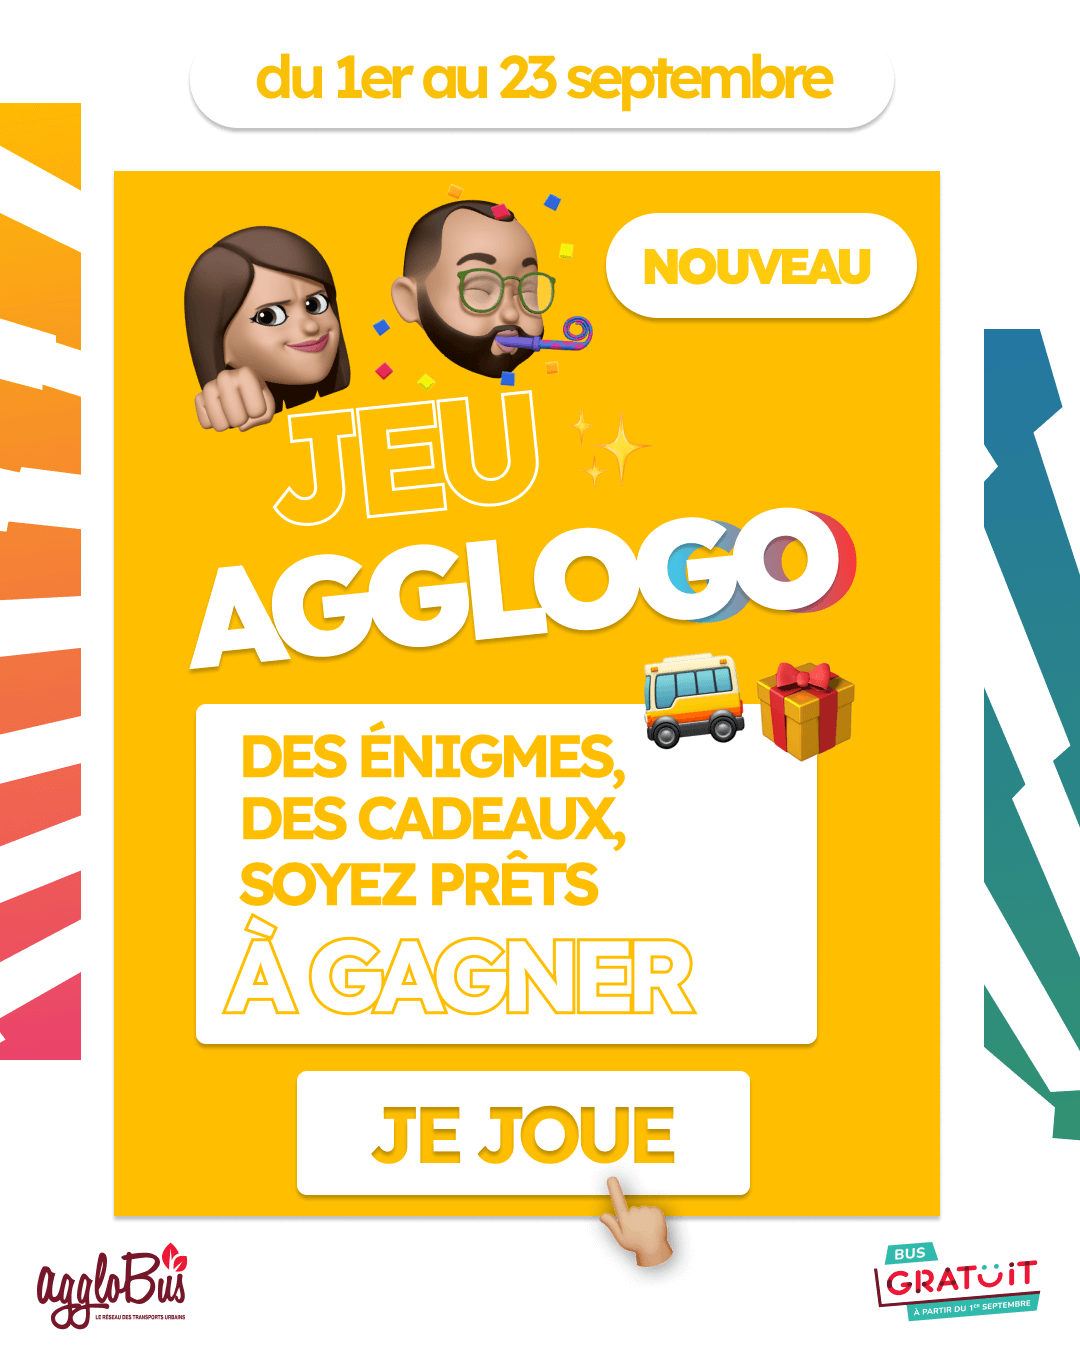 Cliquez sur l'image pour en savoir plus sur AGGLOGO, la chasse au trésor pour fêter le lancement de la gratuité du réseau de bus à Bourges et gagner des cadeaux.